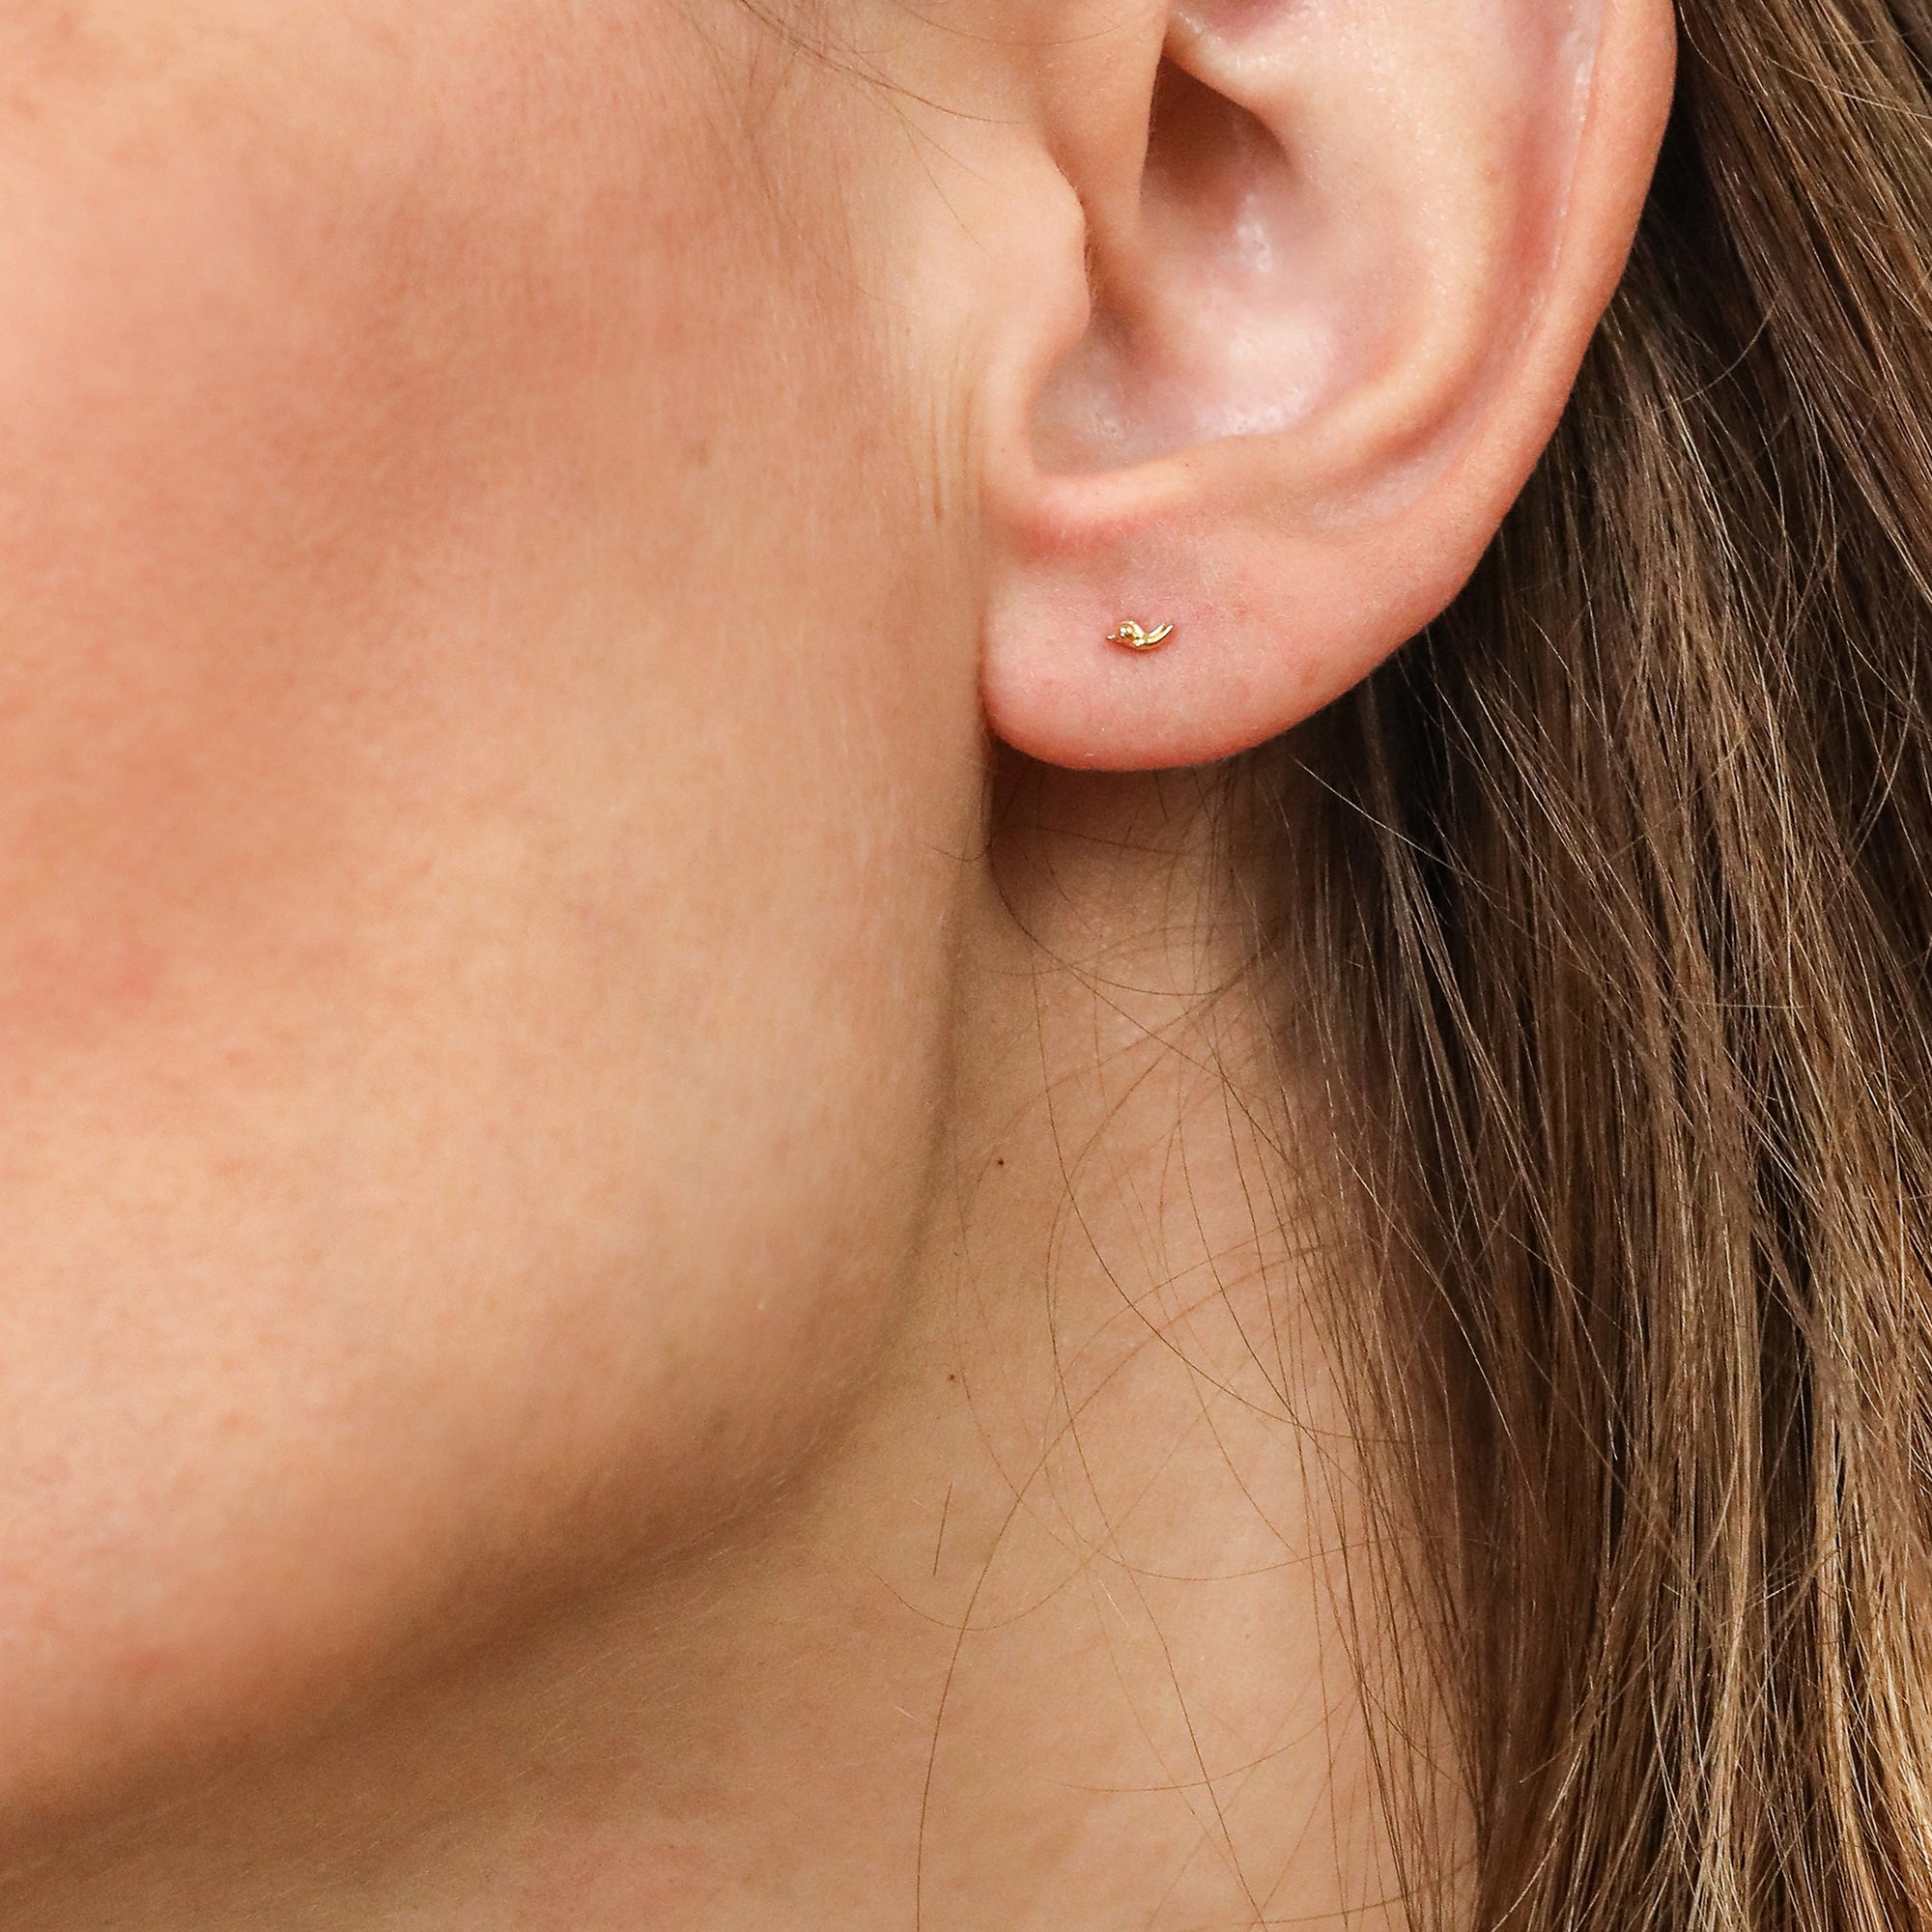 gold vermeil stud earrings